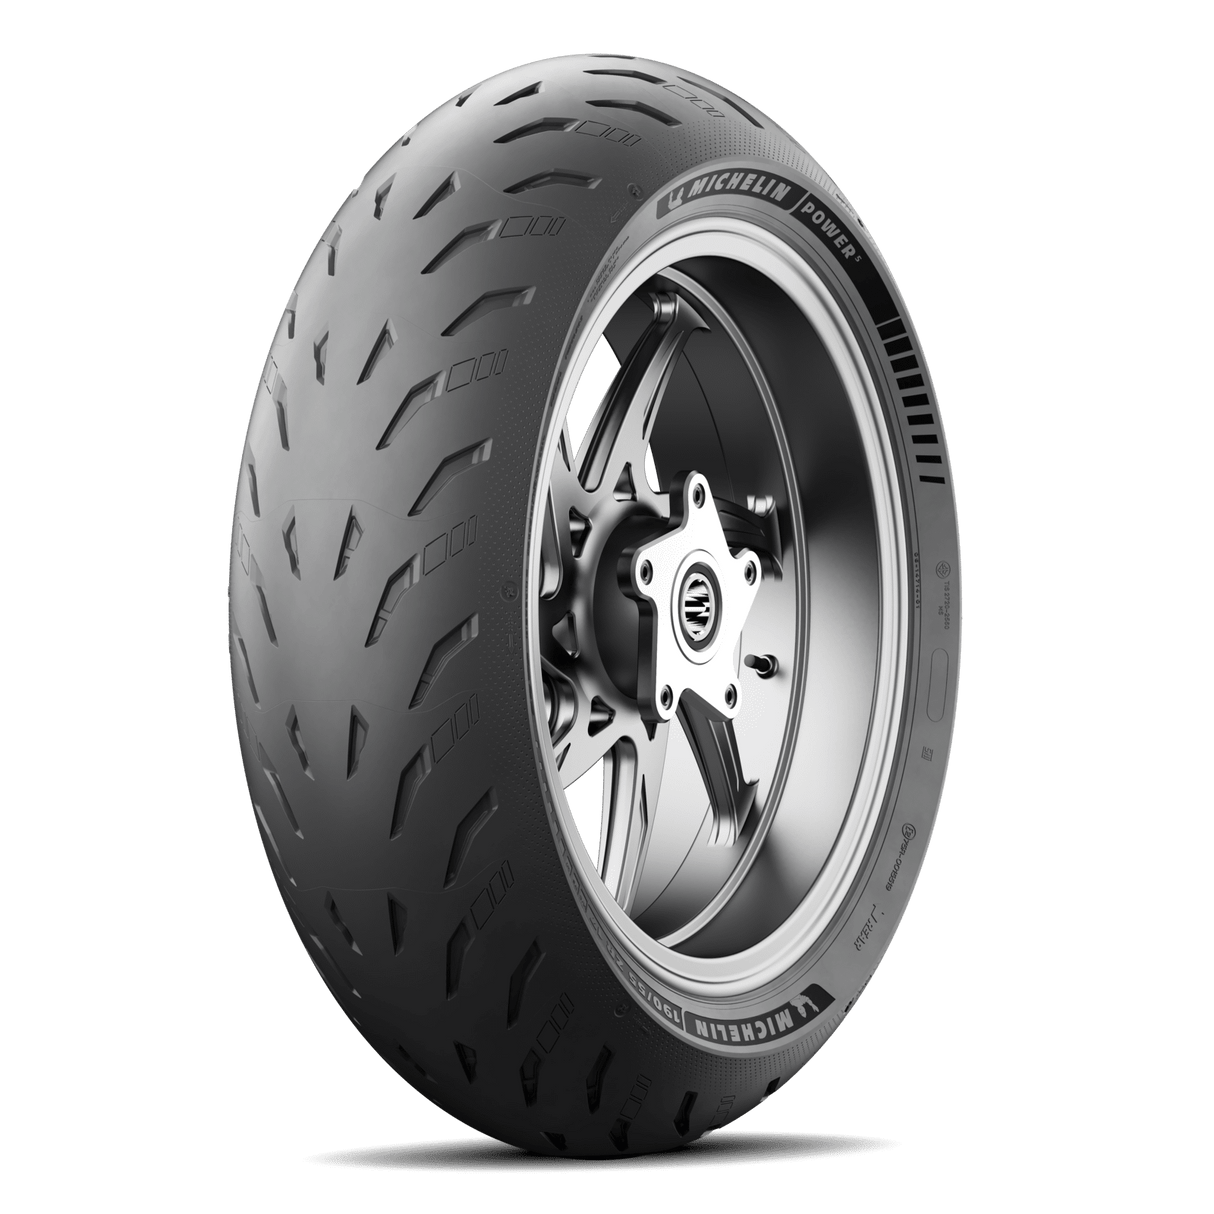 Michelin Power 5 200/55 ZR 17 (73W) Rear Tyre